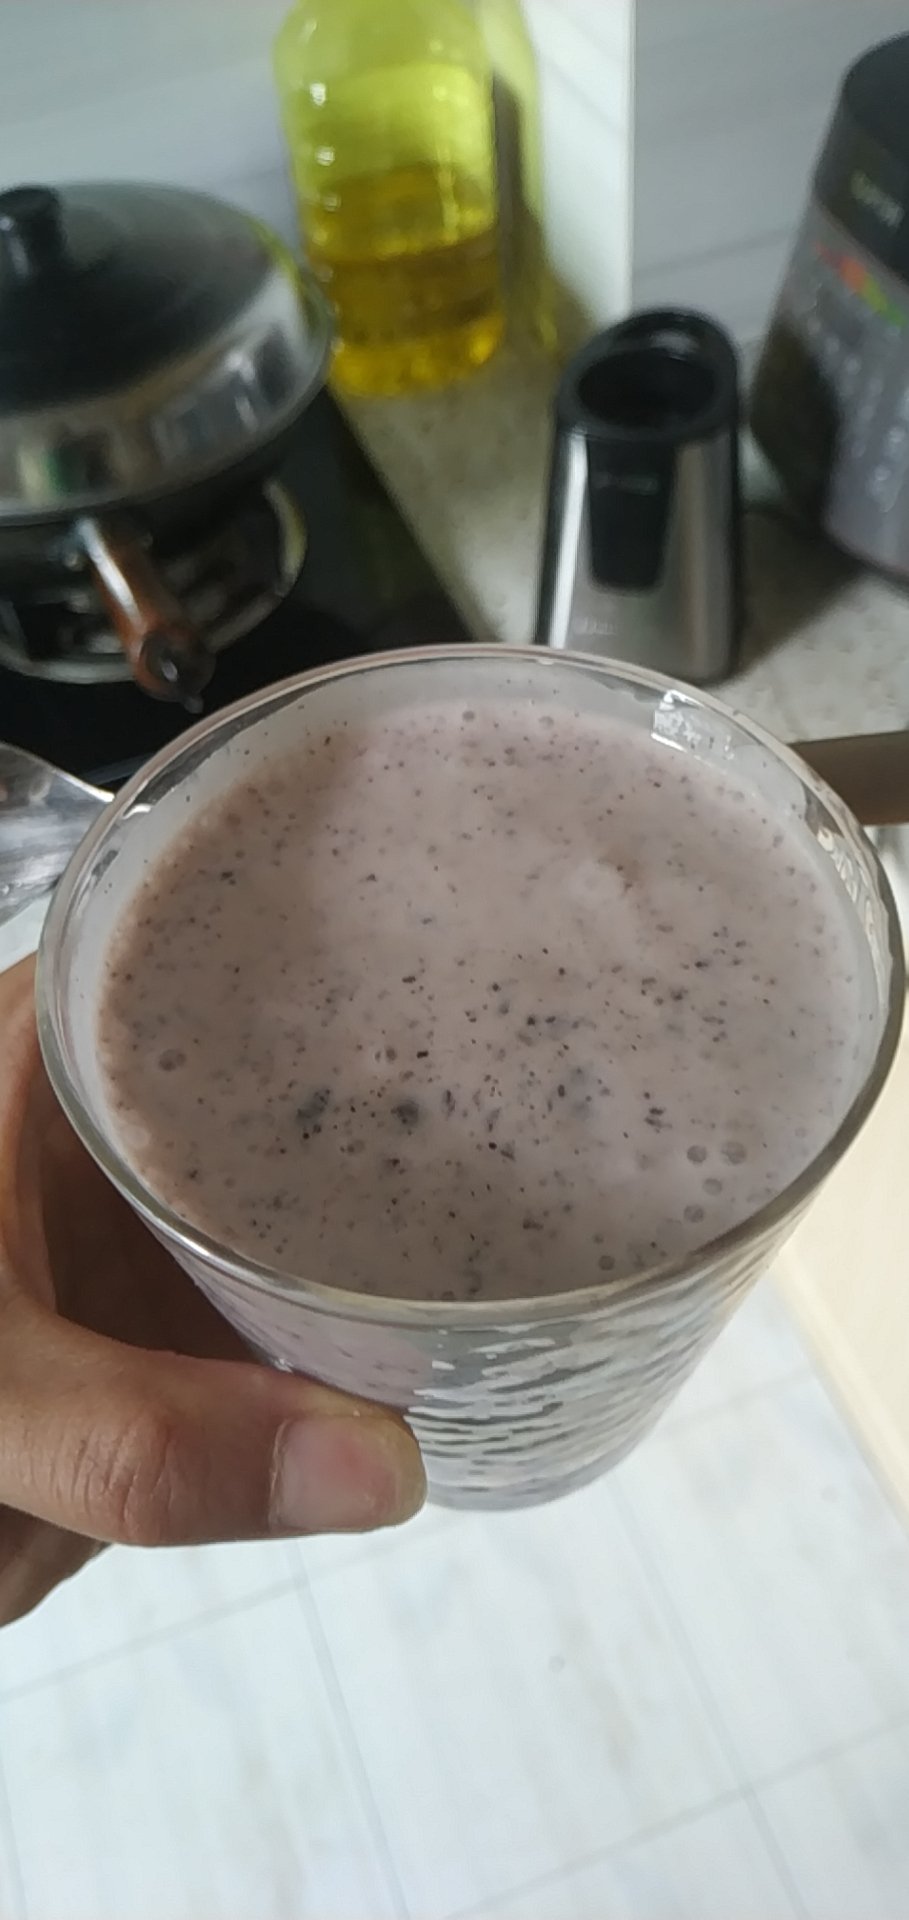 【一只酸奶牛】紫米酸奶昔🍃梅森杯的日常